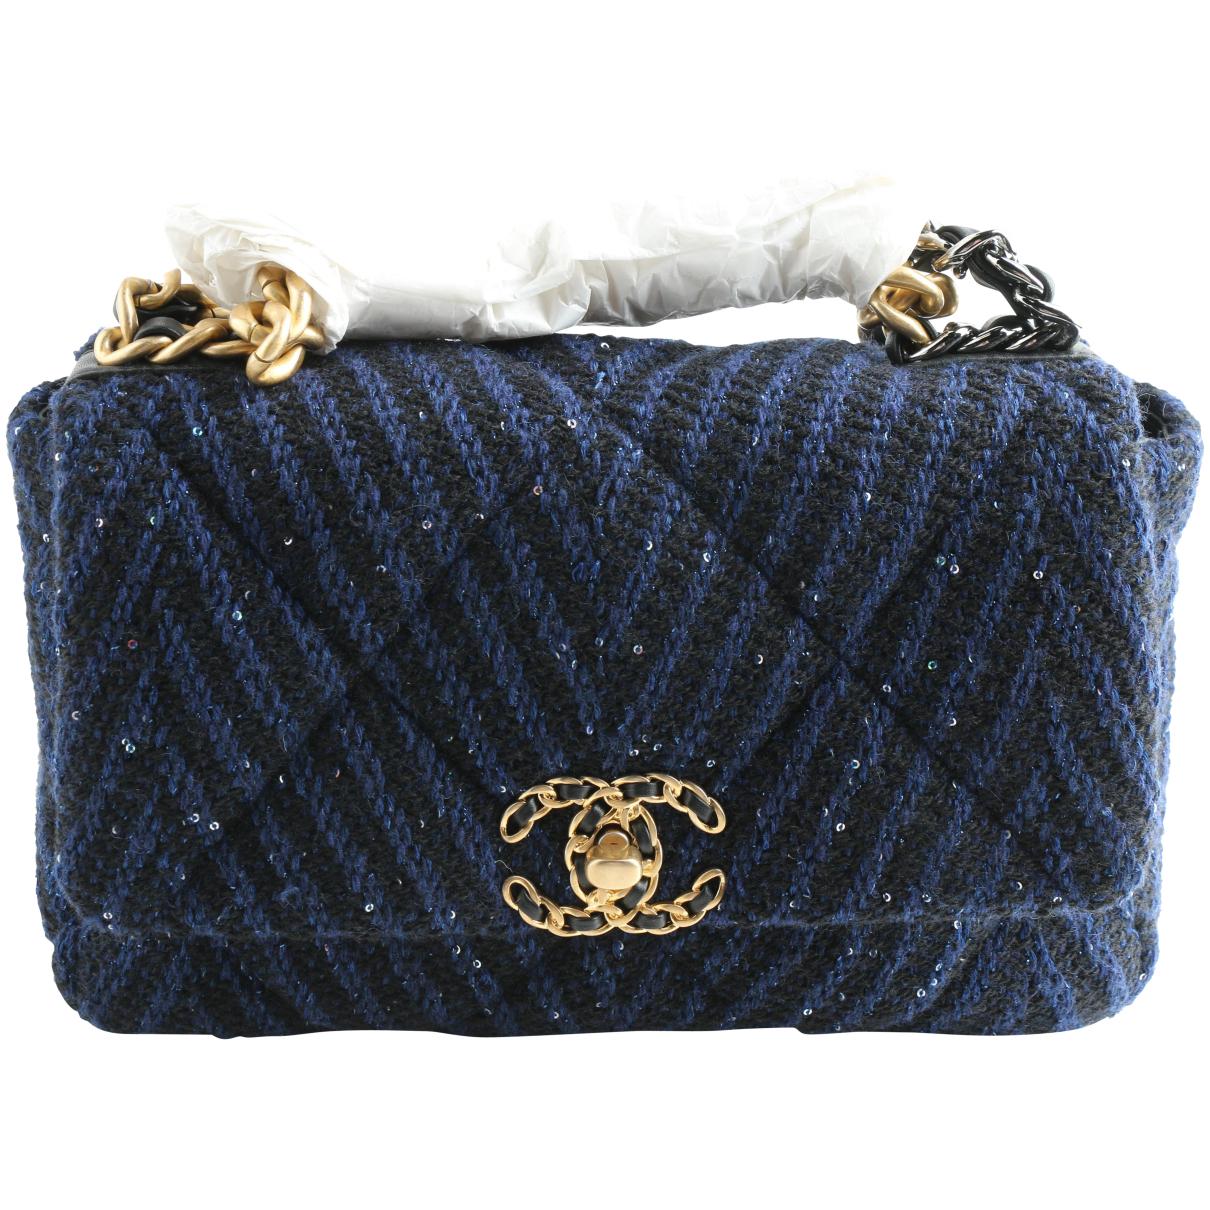 Chanel 19 tweed handbag Chanel Multicolour in Tweed - 31843401